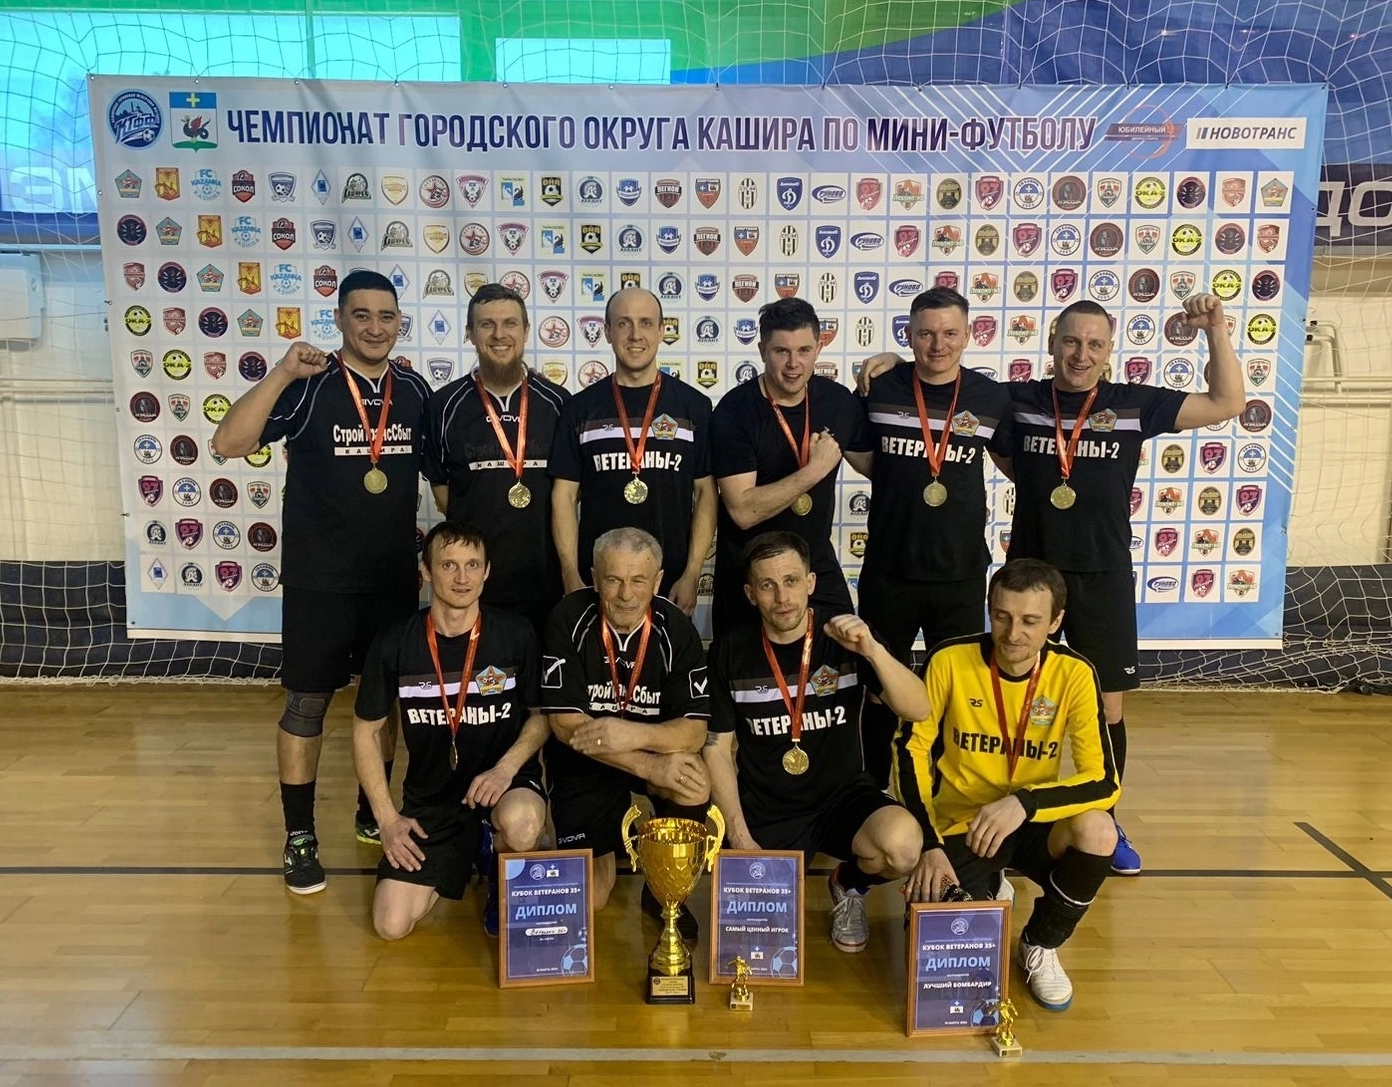 Команда каширских ветеранов стала сильнейшей на межрегиональном турнире по мини-футболу